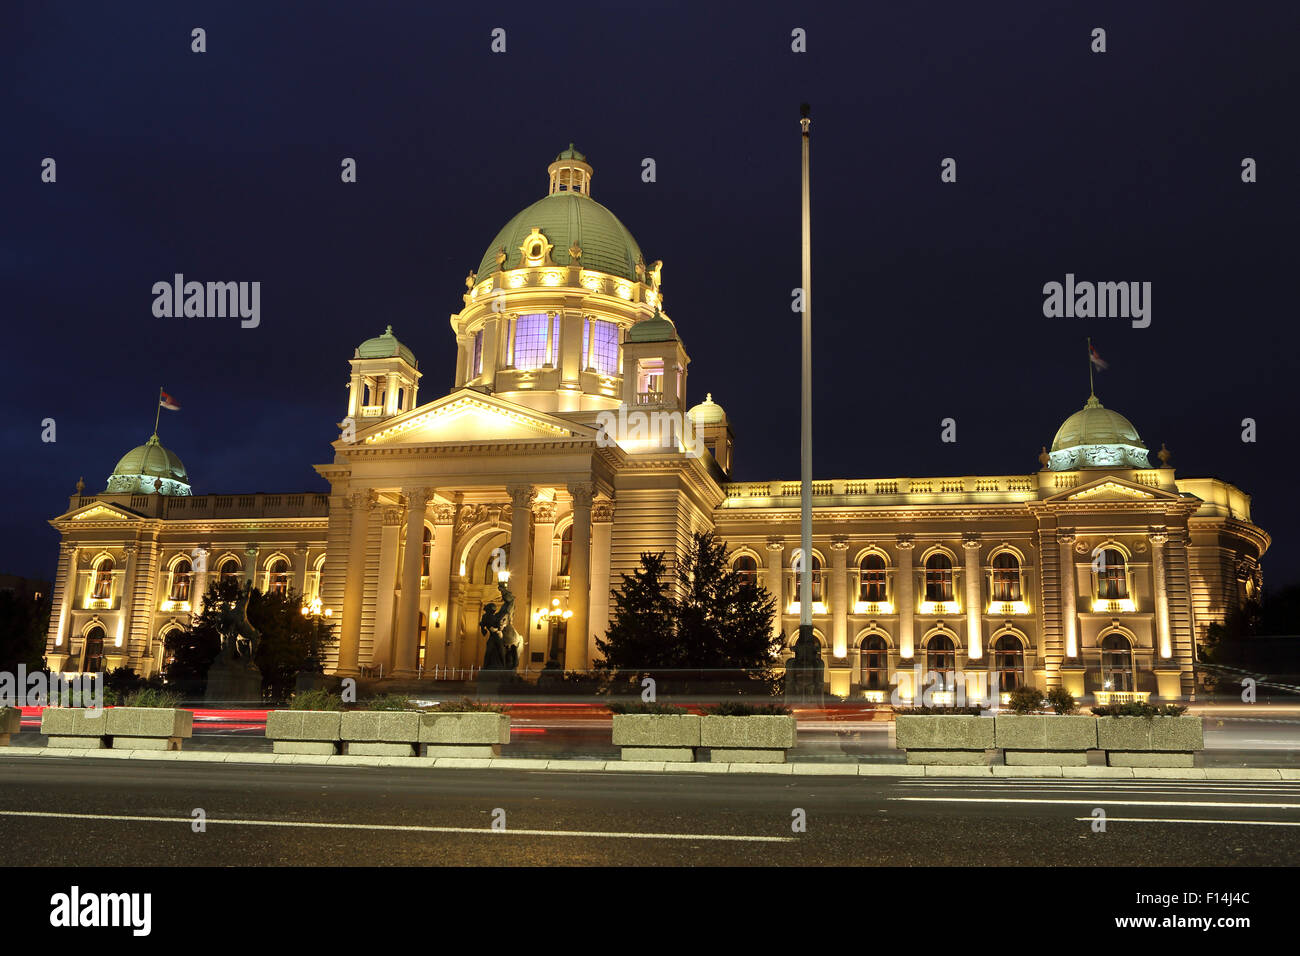 El edificio del Parlamento serbio en Belgrado, Serbia. El edificio está iluminado. Foto de stock